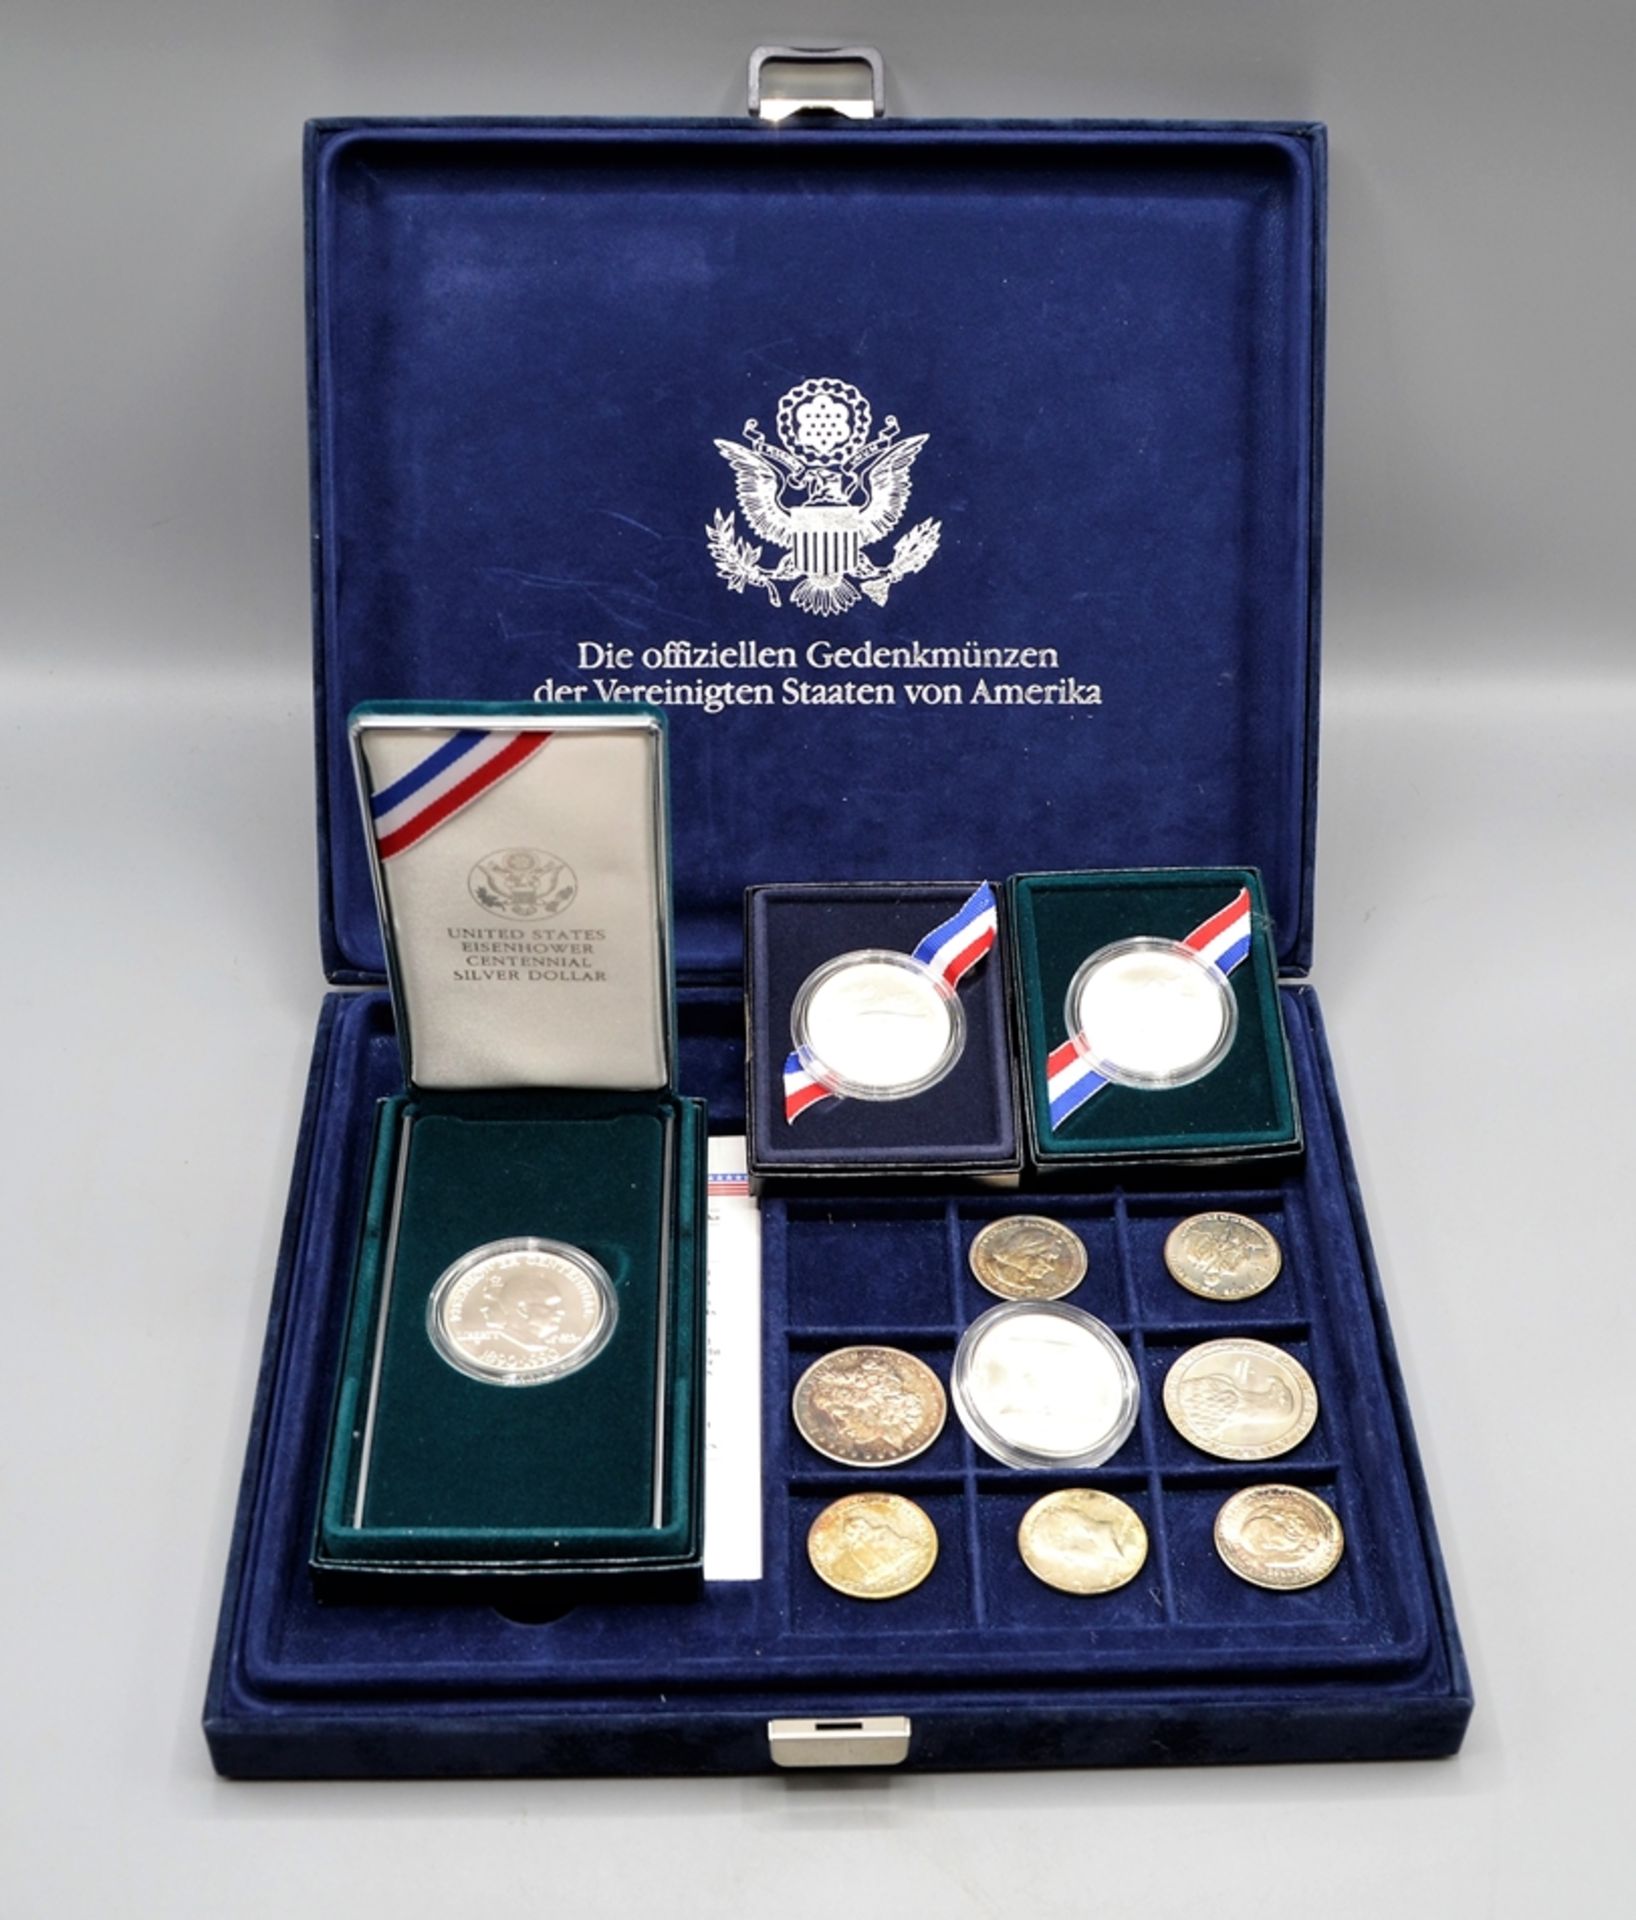 Sammlung die offiziellen Gedenkmünzen der Vereinigten Staaten von Amerika, darunter 1 Dollar 1991 U